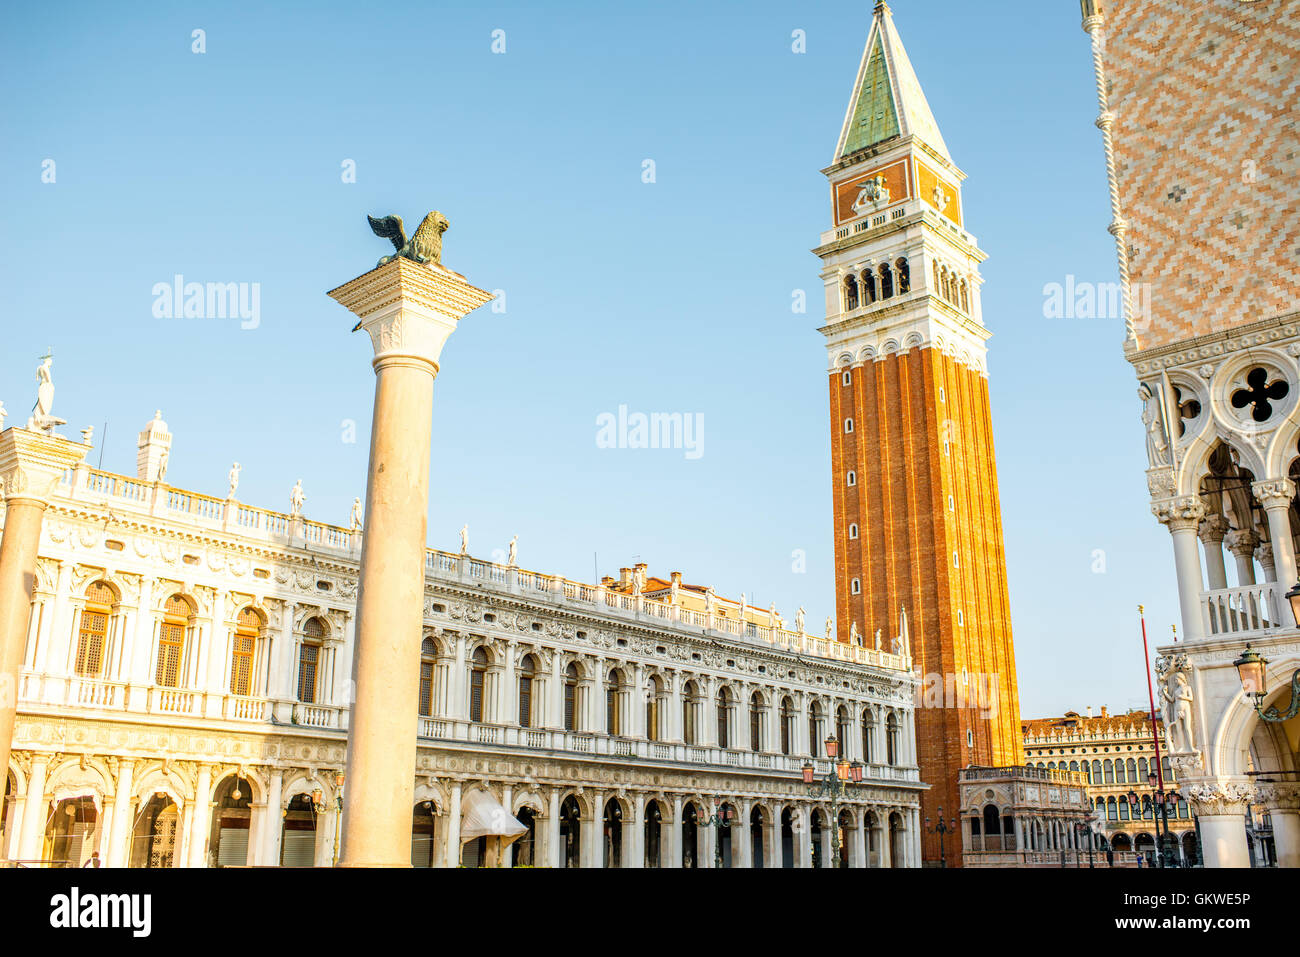 Architecture in Venice Stock Photo